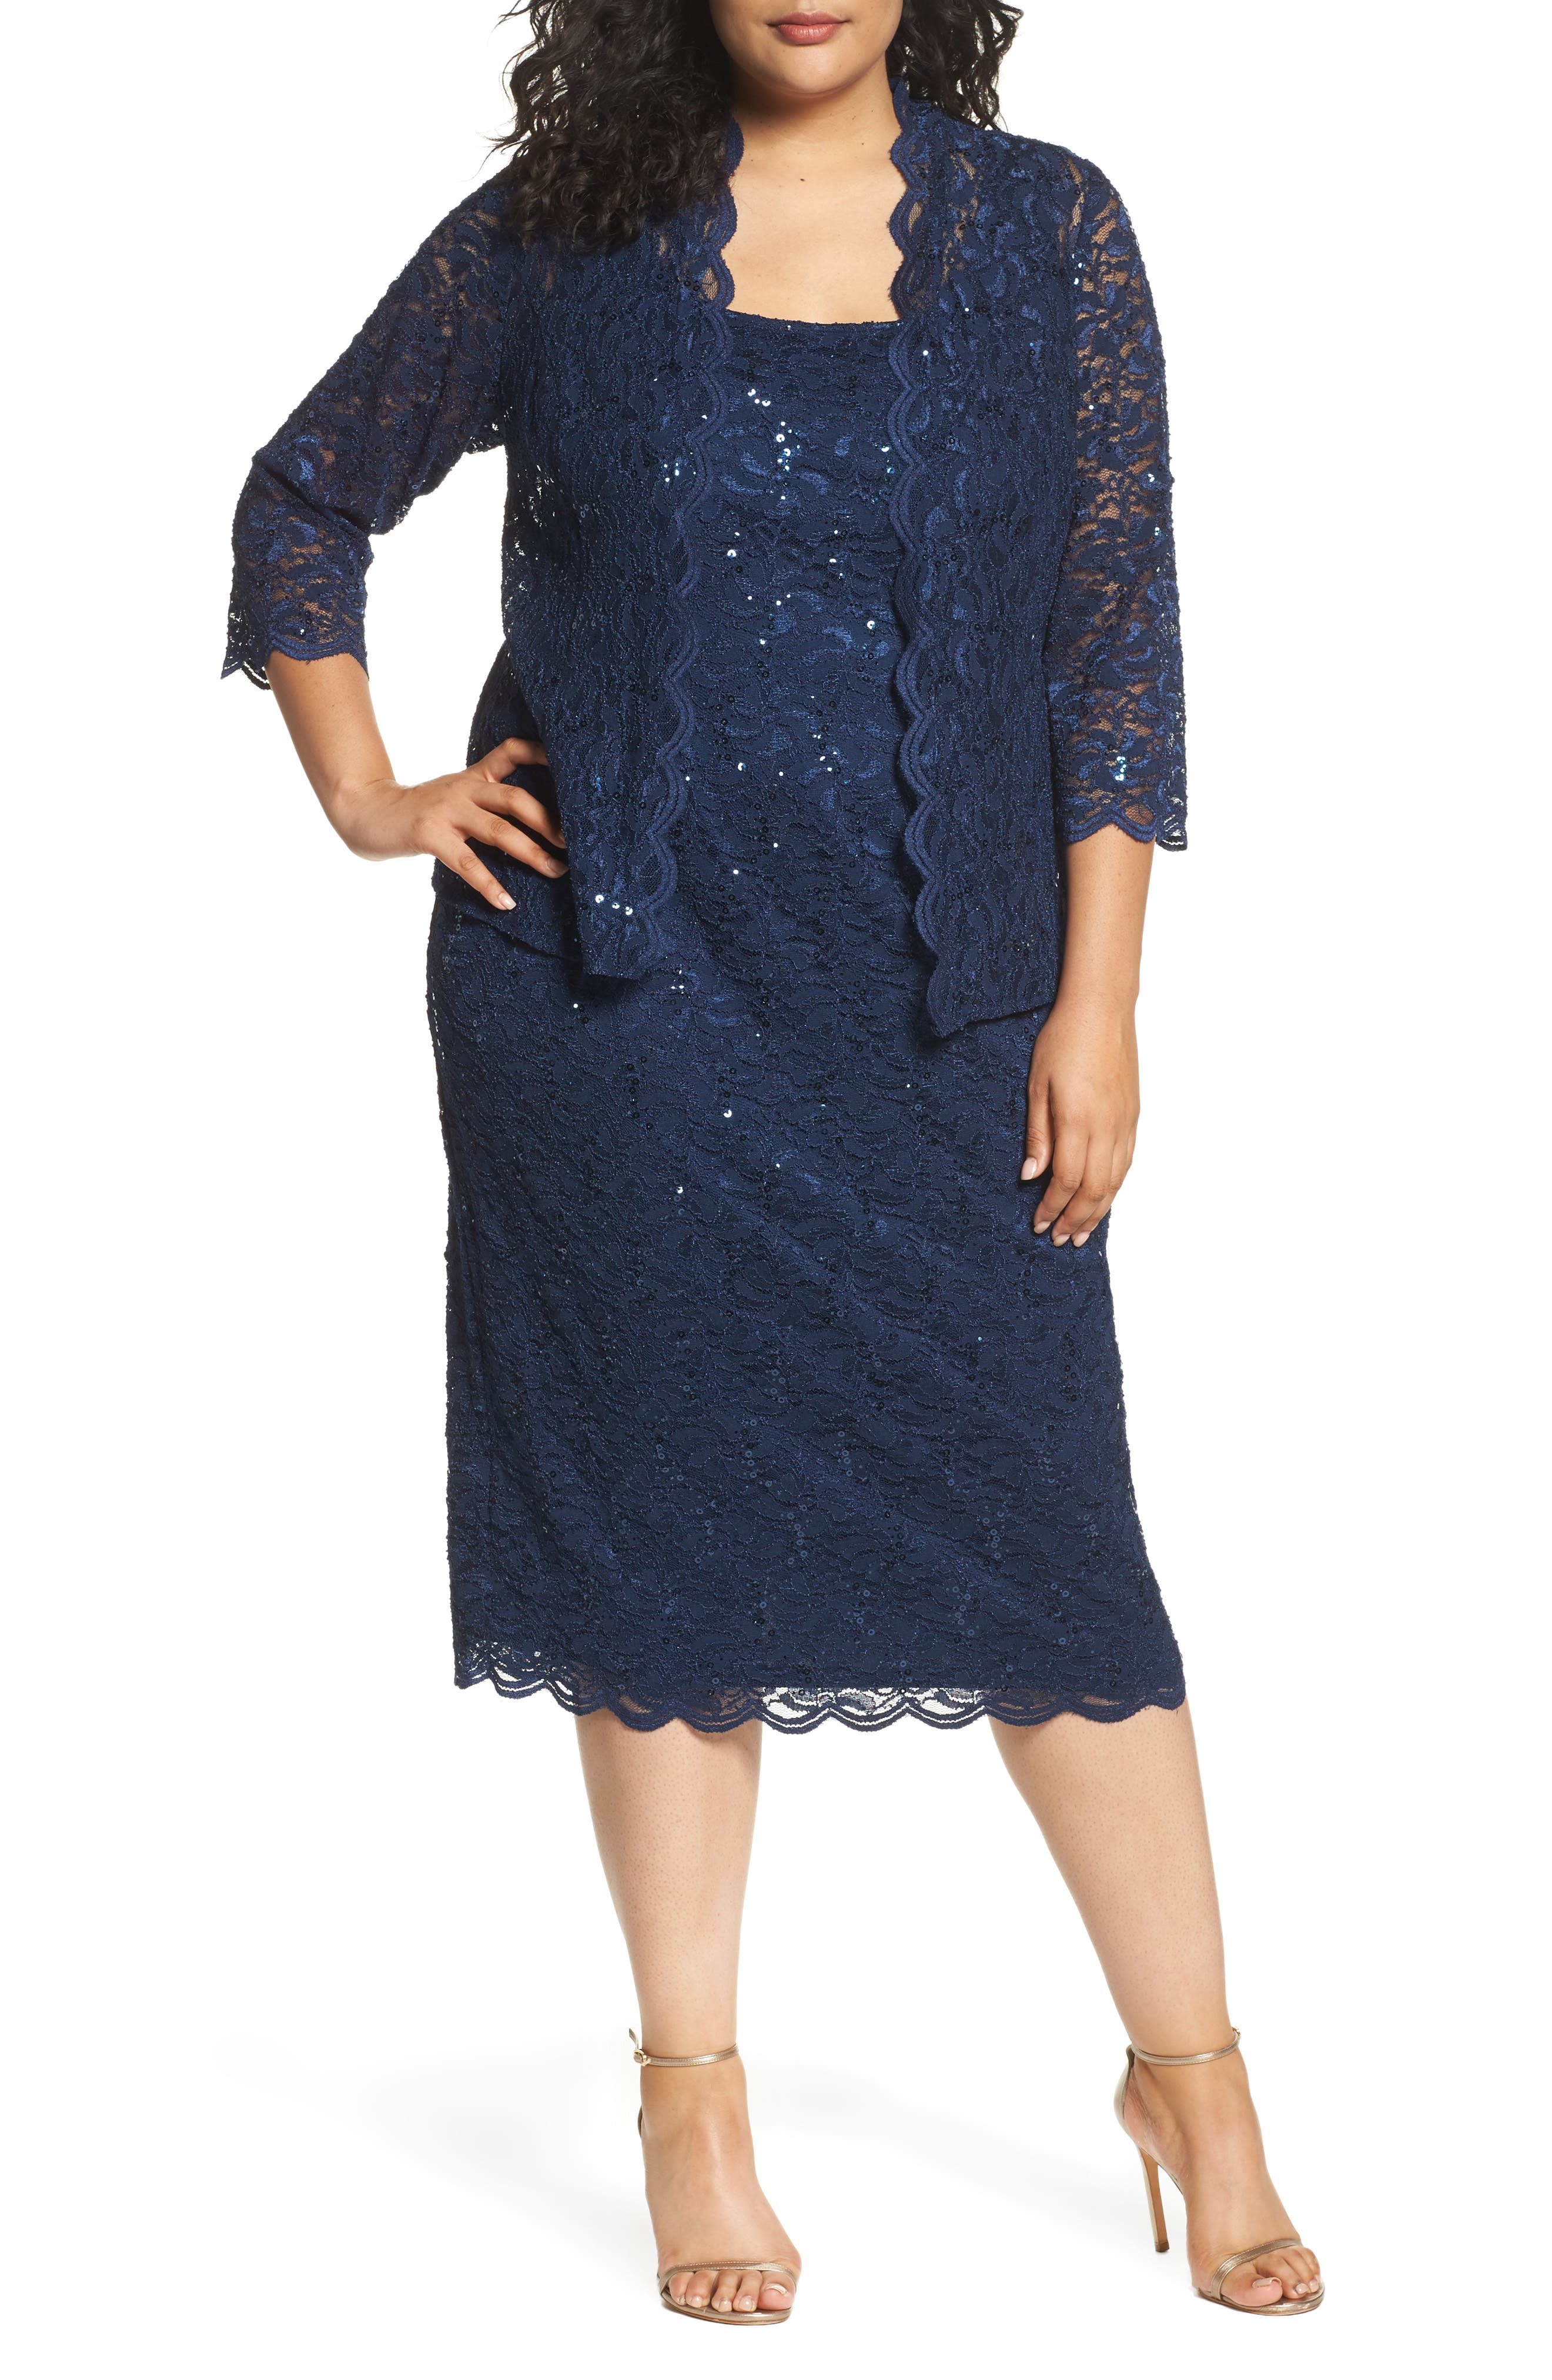 Alex Evenings Womens Plus-Size Plus-Size Portrait-Collar Tea-Length Dress 